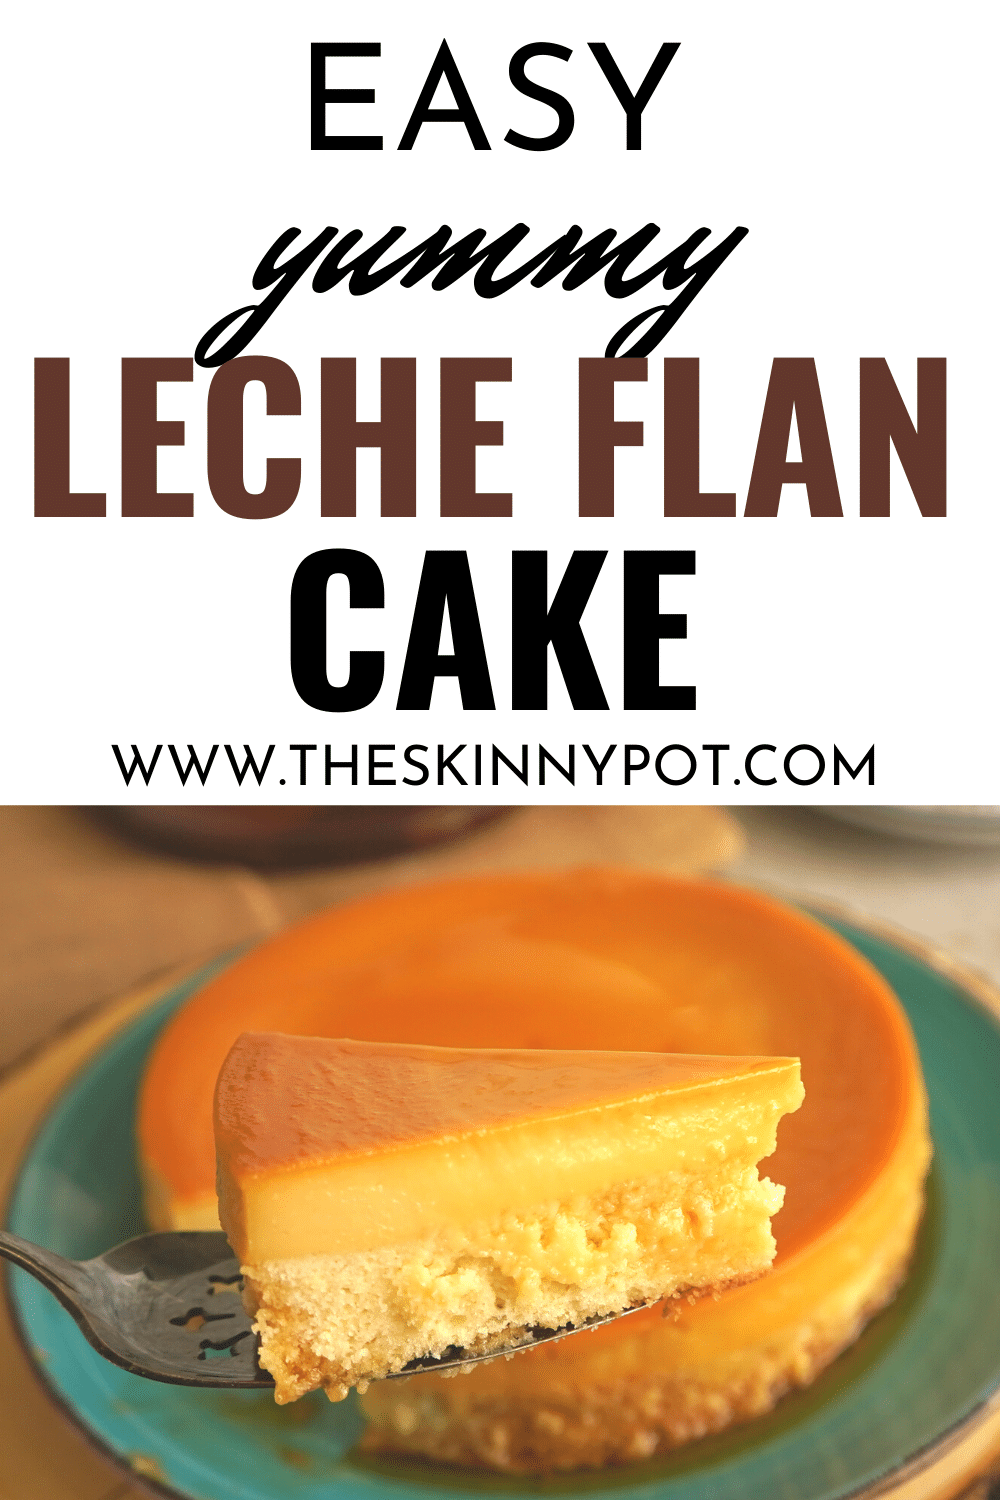 Easy Leche Flan Cake